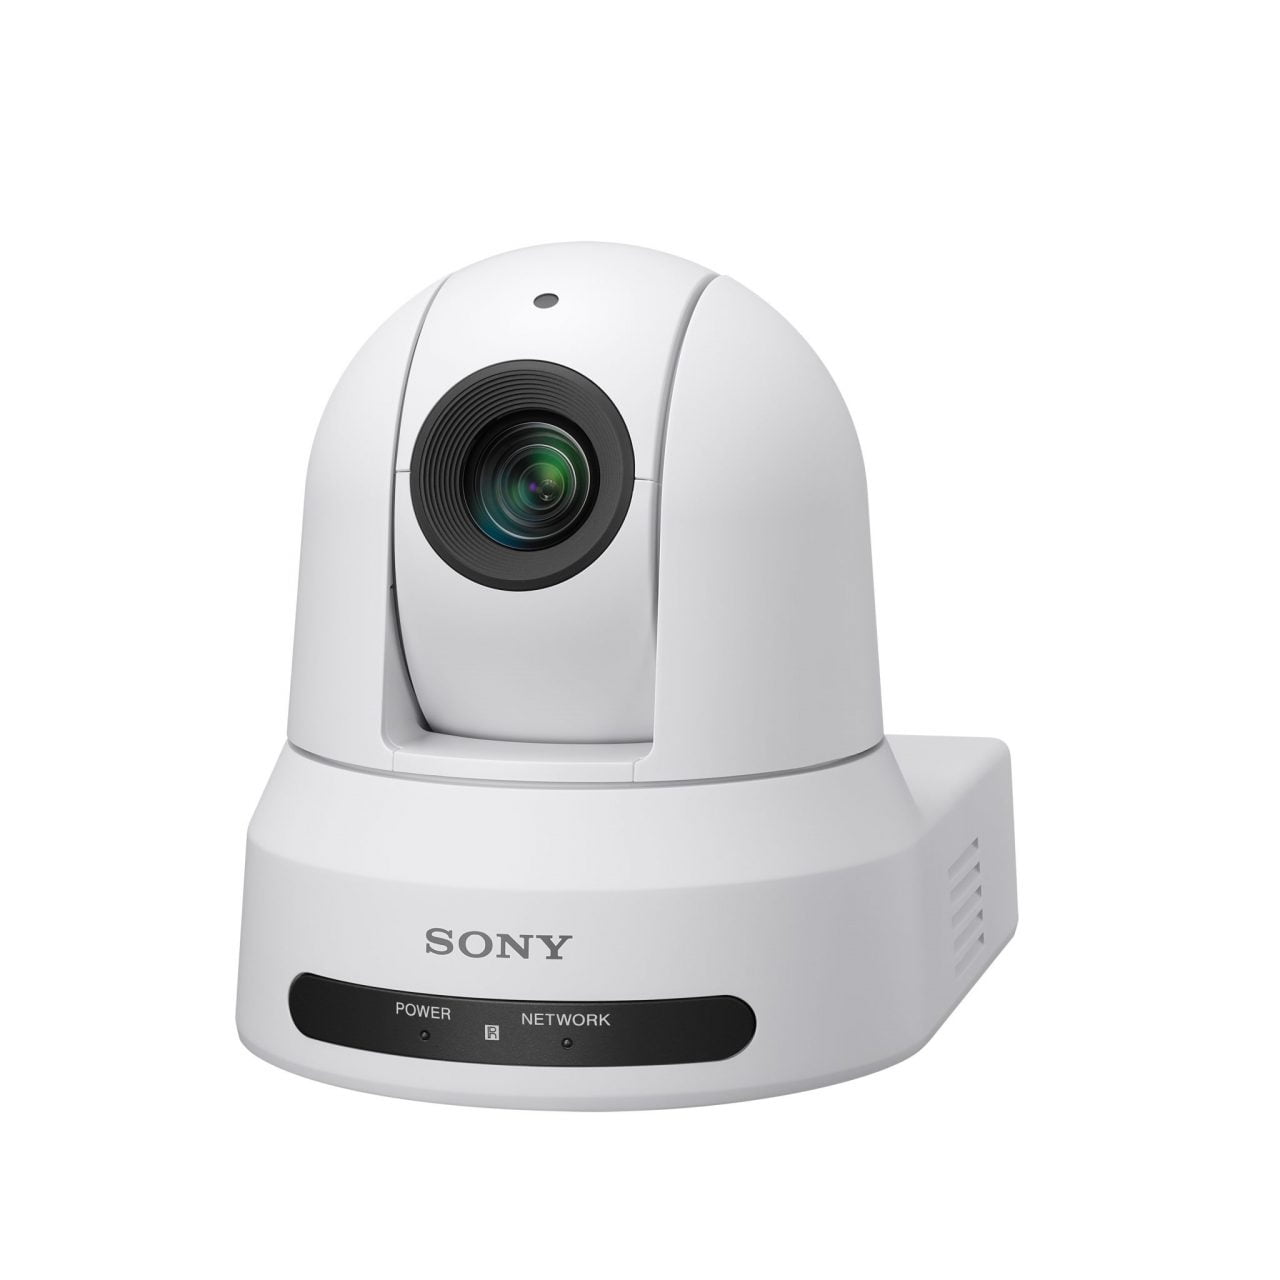 Sony espande la line-up di telecamere Pan/Tilt/Zoom ad elevate prestazioni IP-based con funzionalità NDI®/HX¹ 2